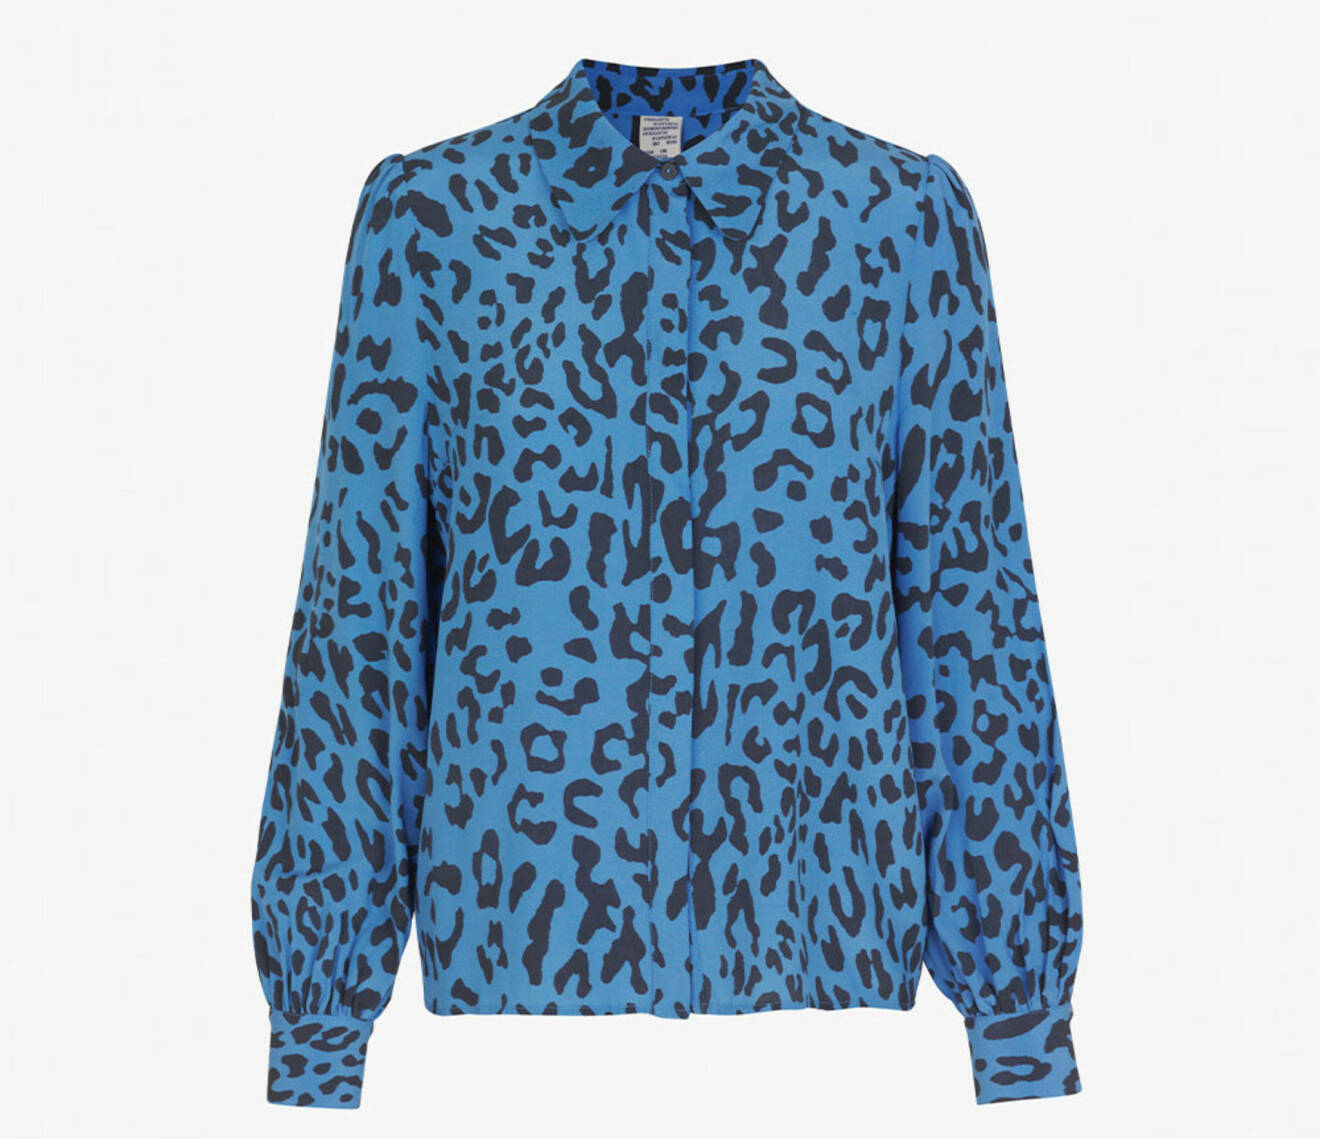 Blå blus med leopardmönster.